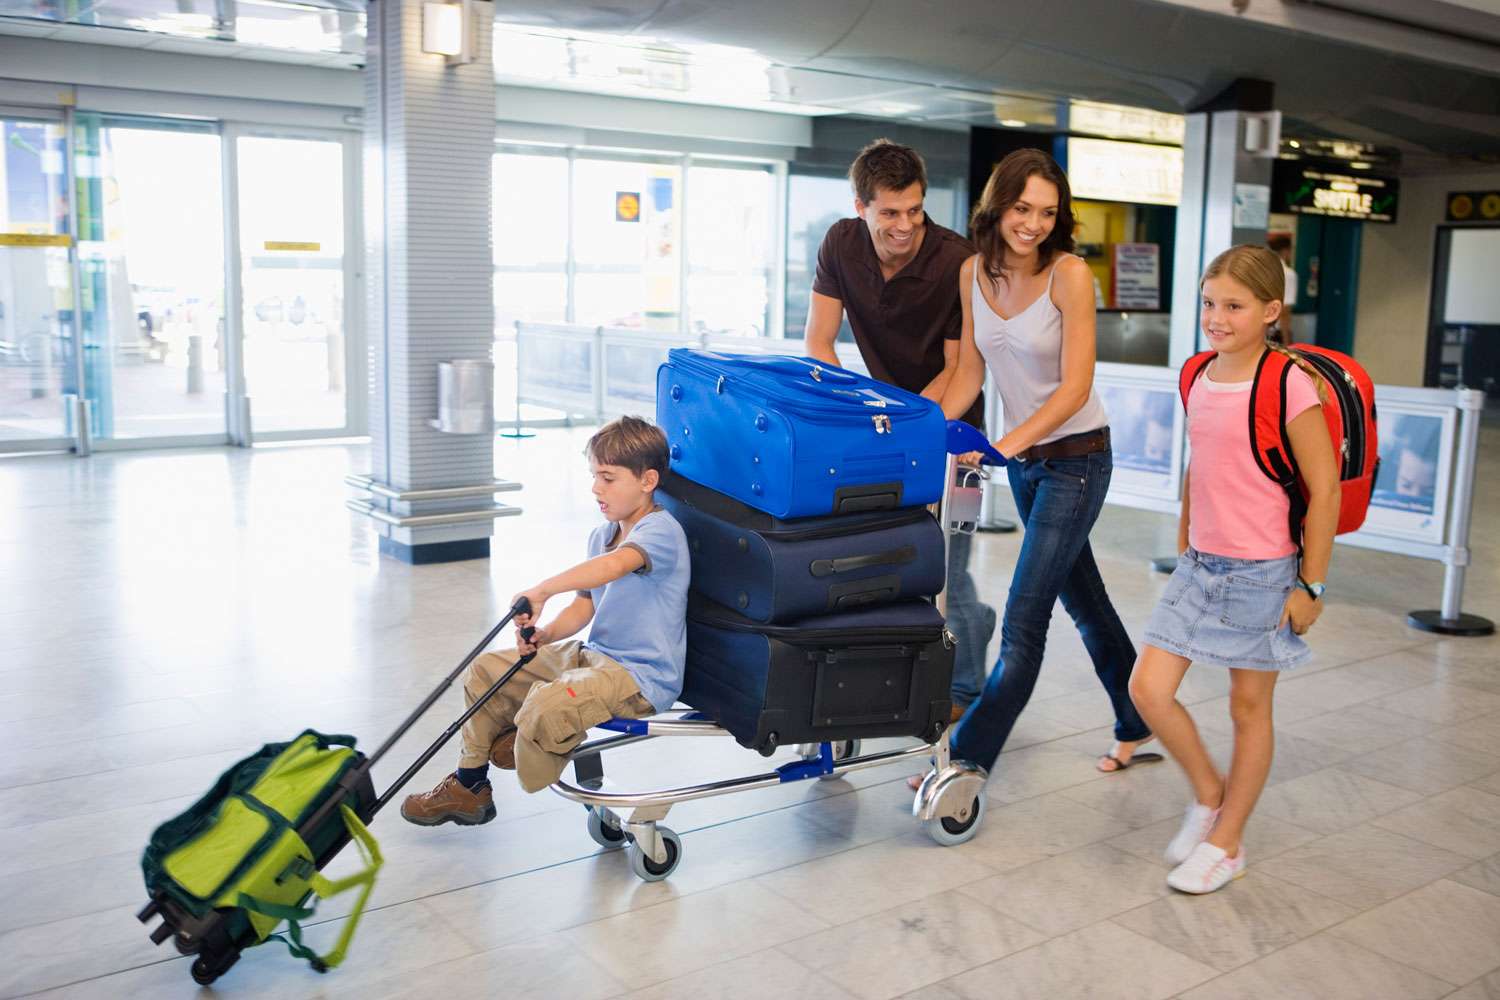 Переехать заграницу. Чемодан в аэропорту. Семья с чемоданами в аэропорту. Тележка с чемоданами в аэропорту. Человек с чемоданом и ребенок.